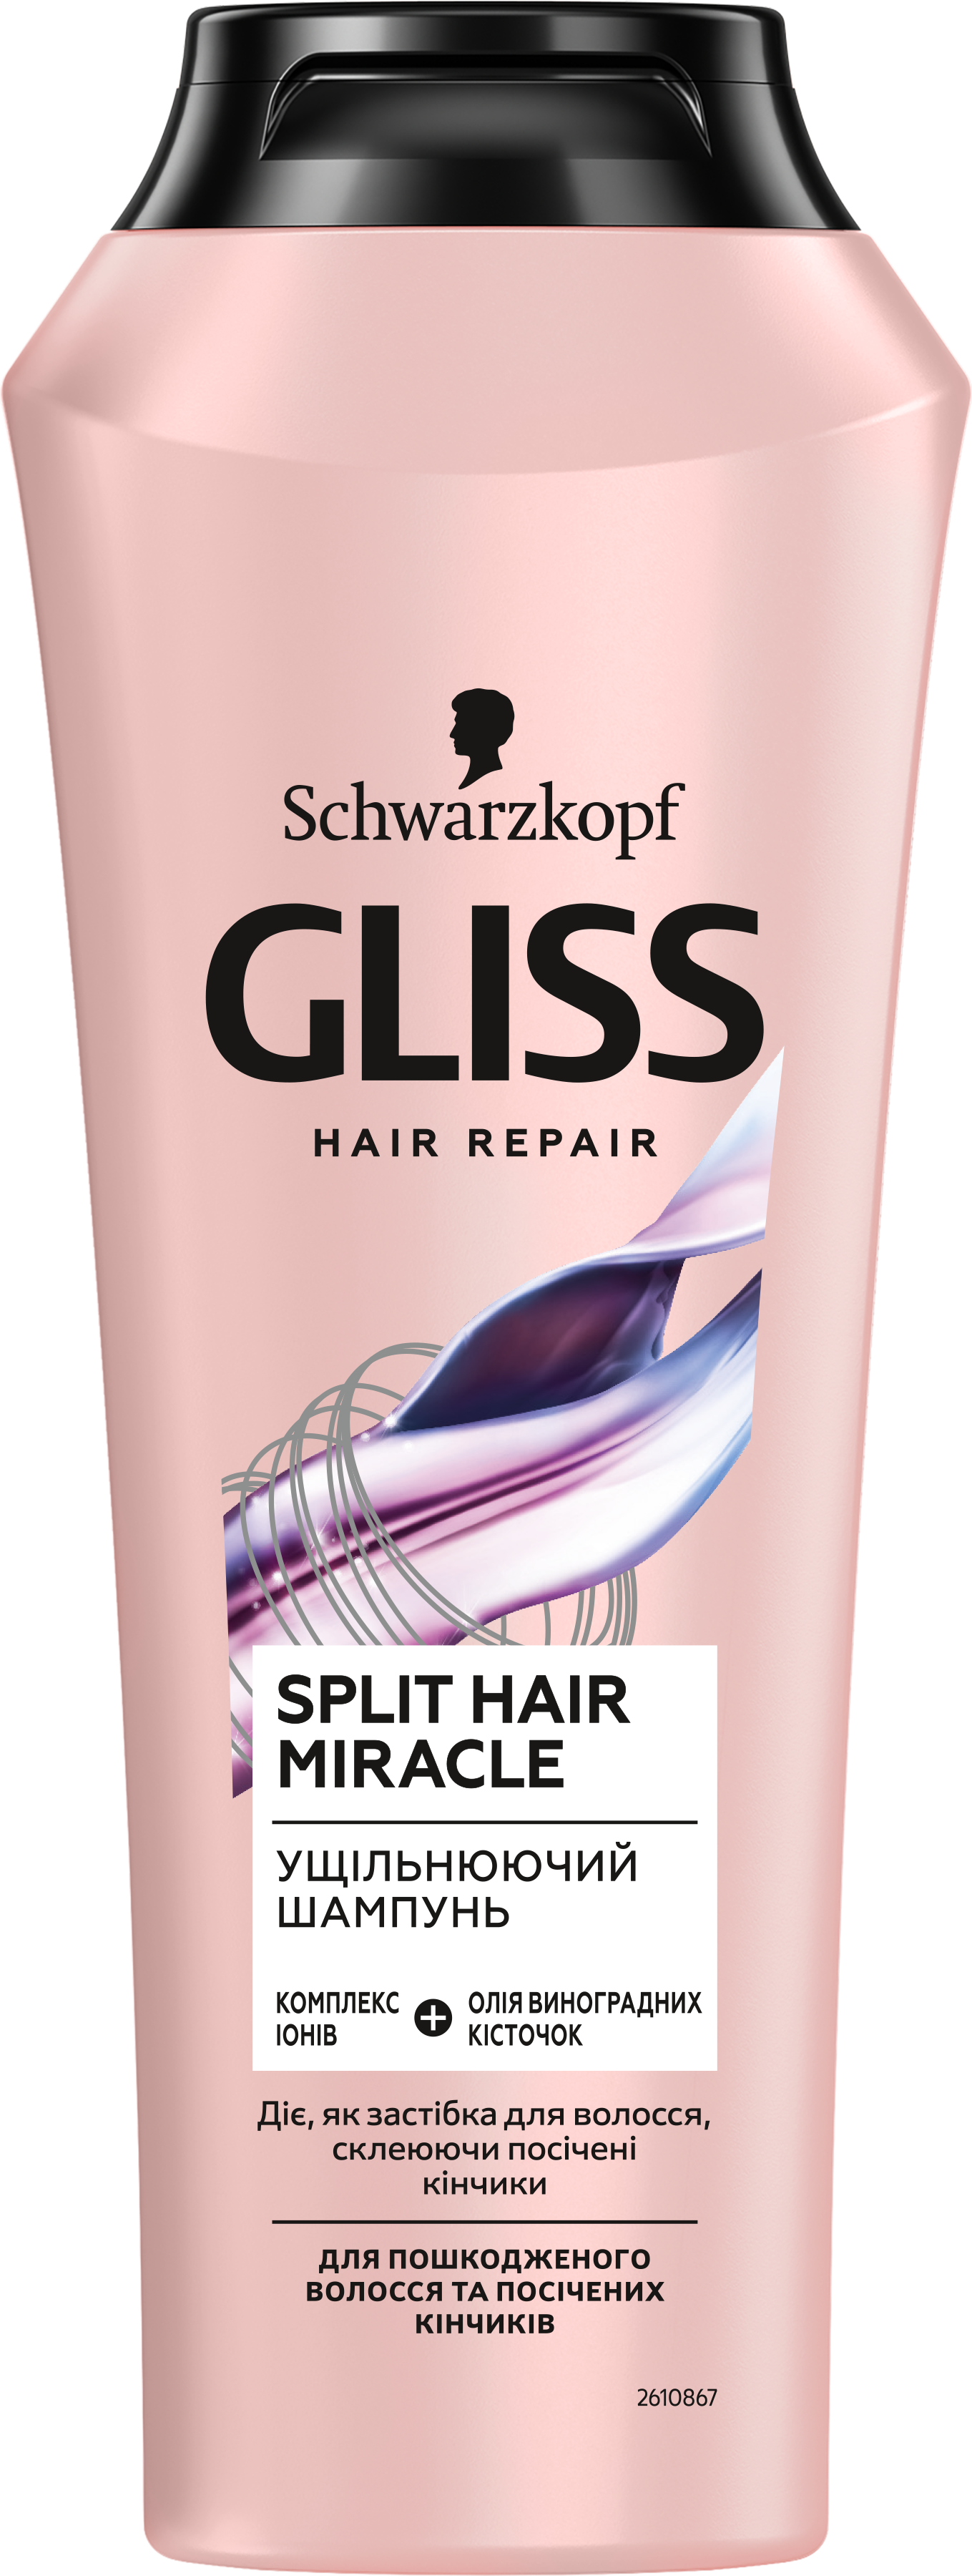 Подарочный набор Gliss Split Hair Miracle: Шампунь, 250 мл + Бальзам, 200 мл - фото 6